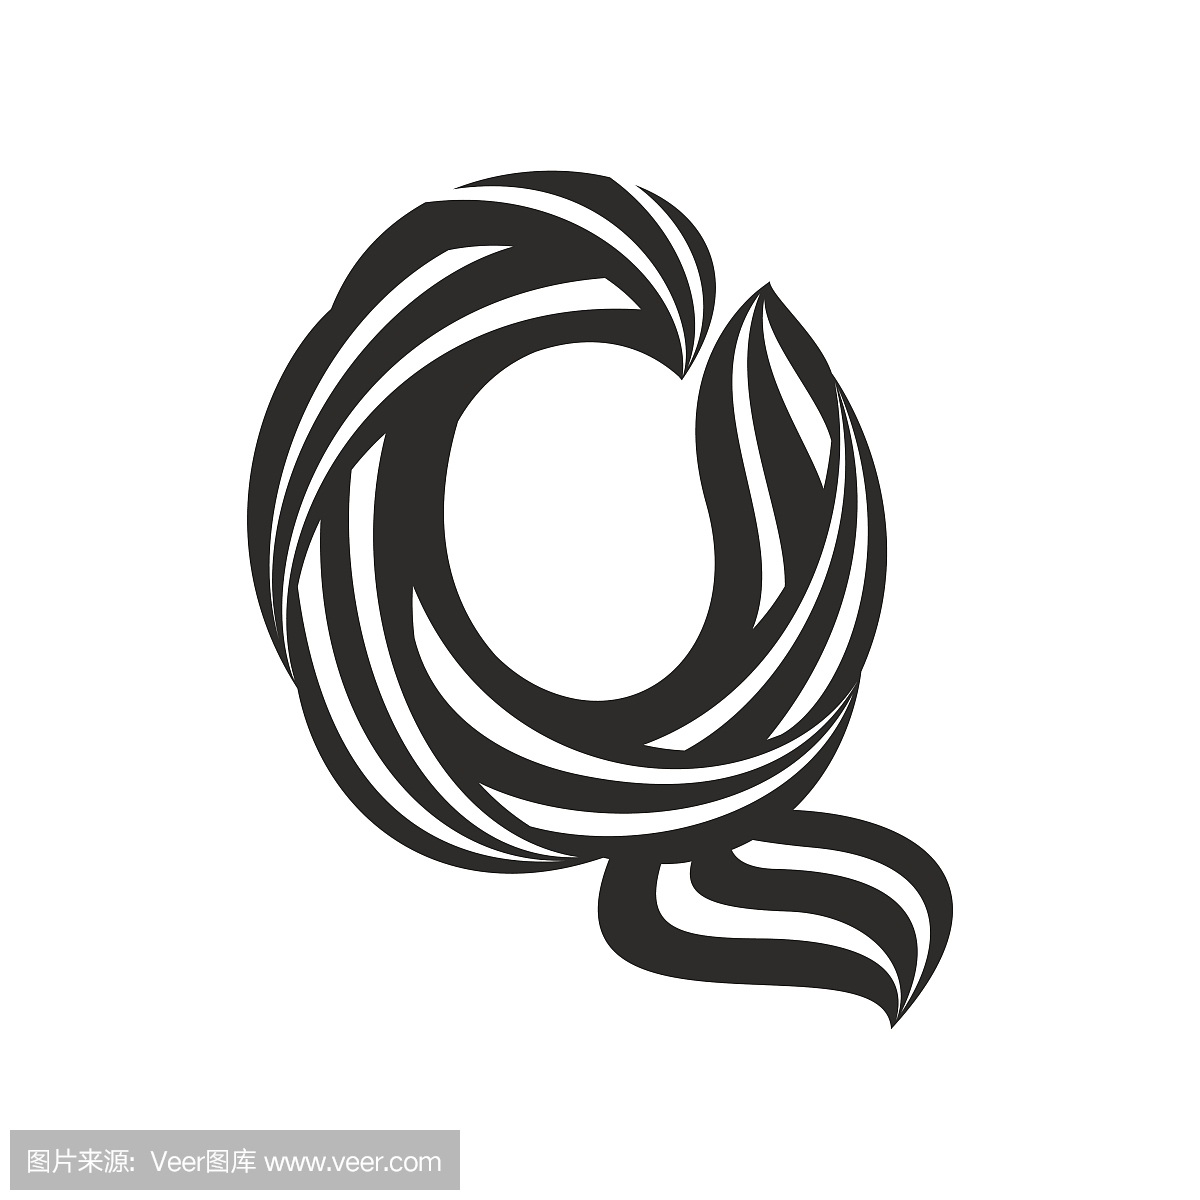 由扭曲线形成的Q字母图标。